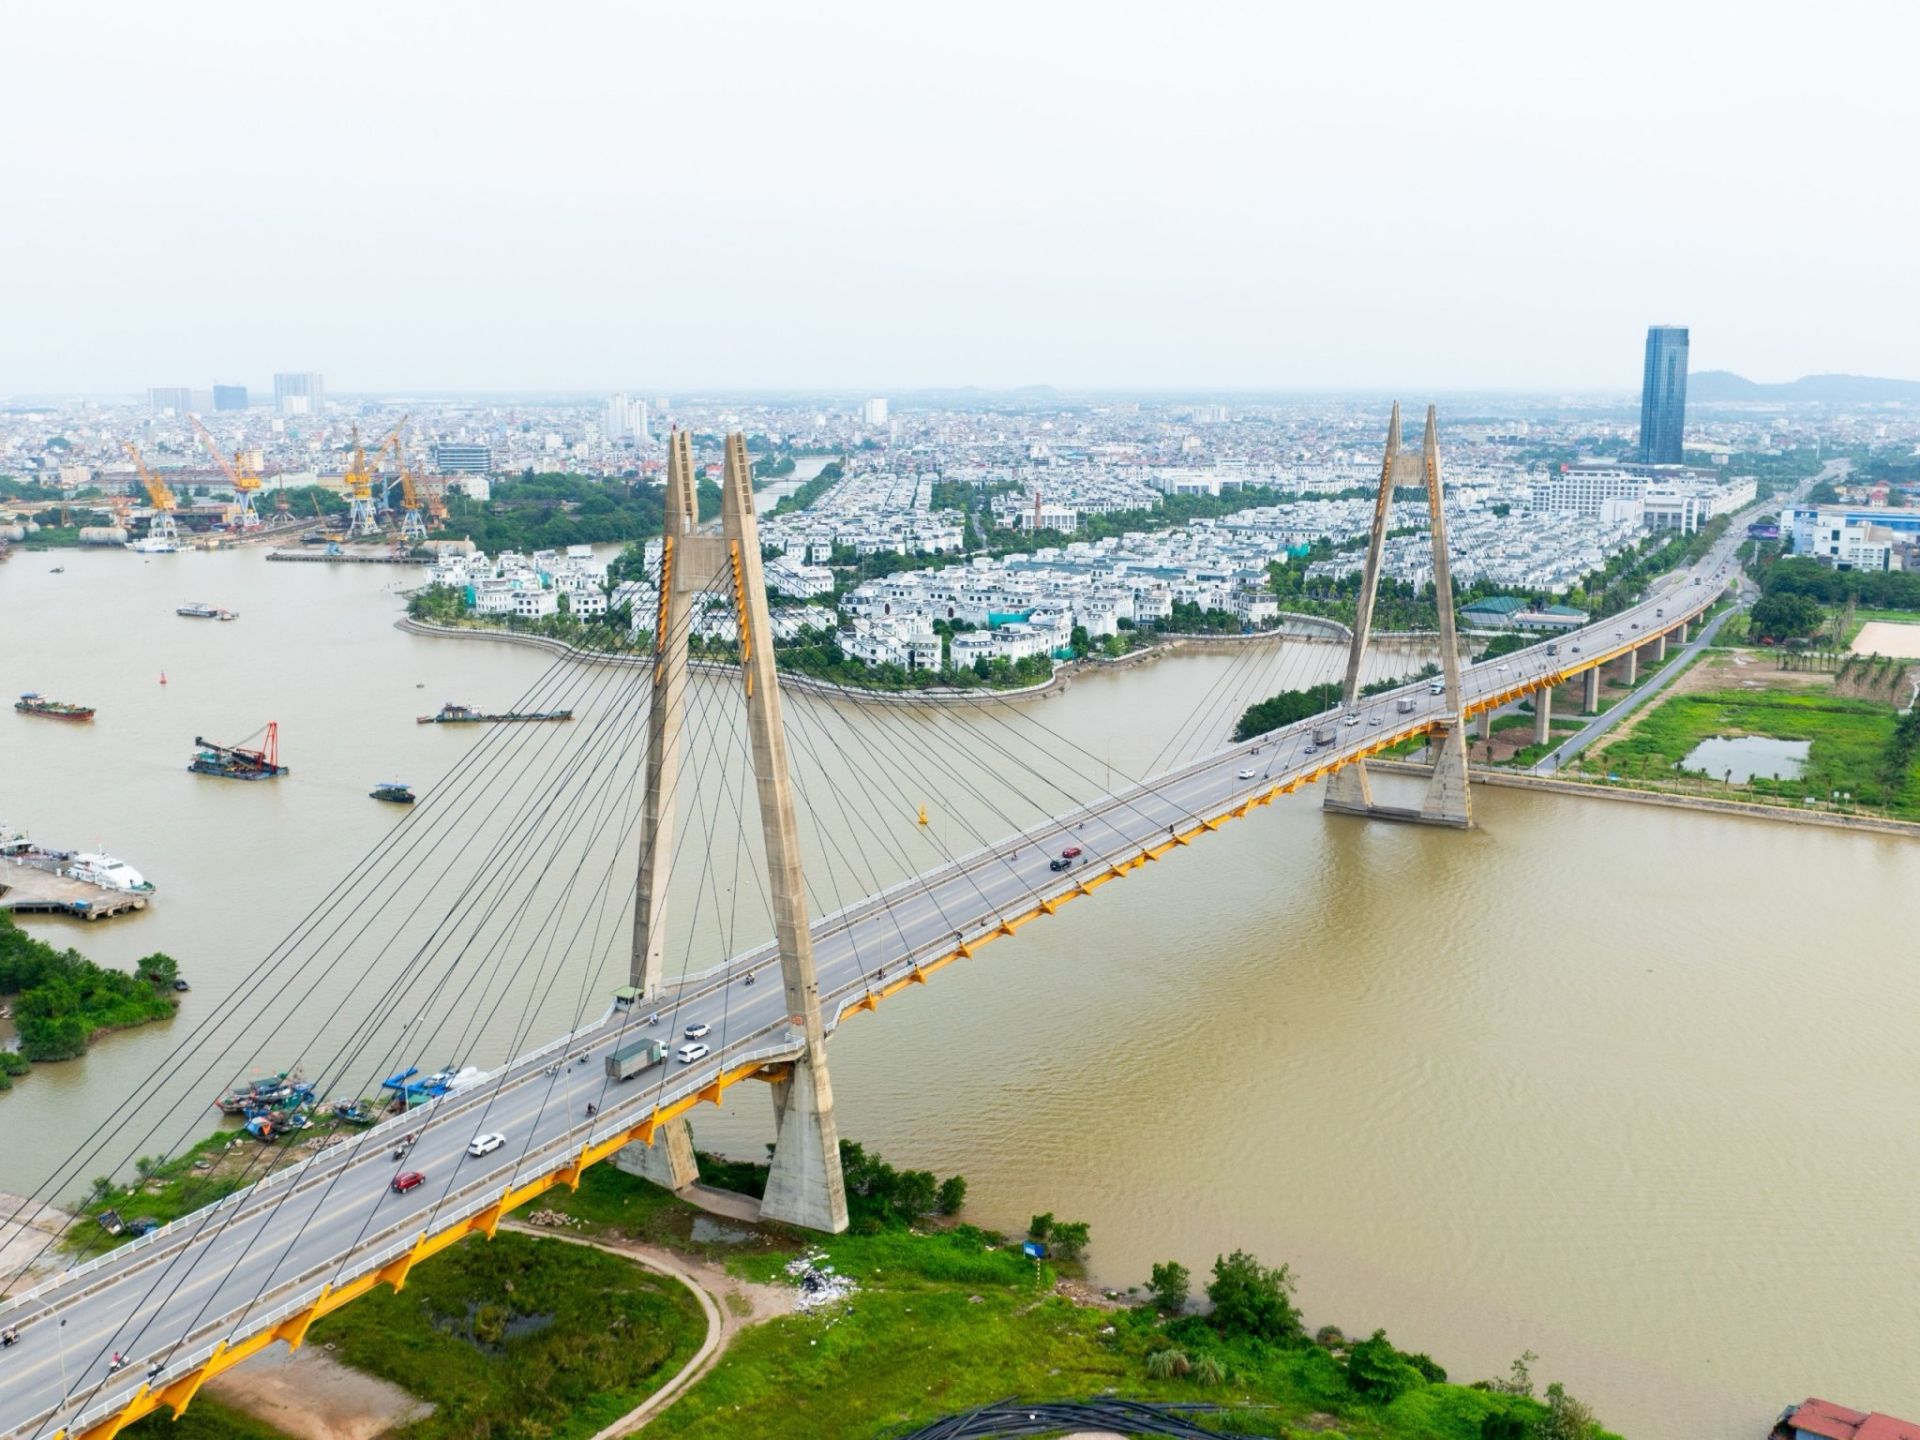 Cầu Bính là cây cầu bắc qua sông Cấm nối thành phố Hải Phòng với huyện Thủy Nguyên và đi ra tỉnh Quảng Ninh